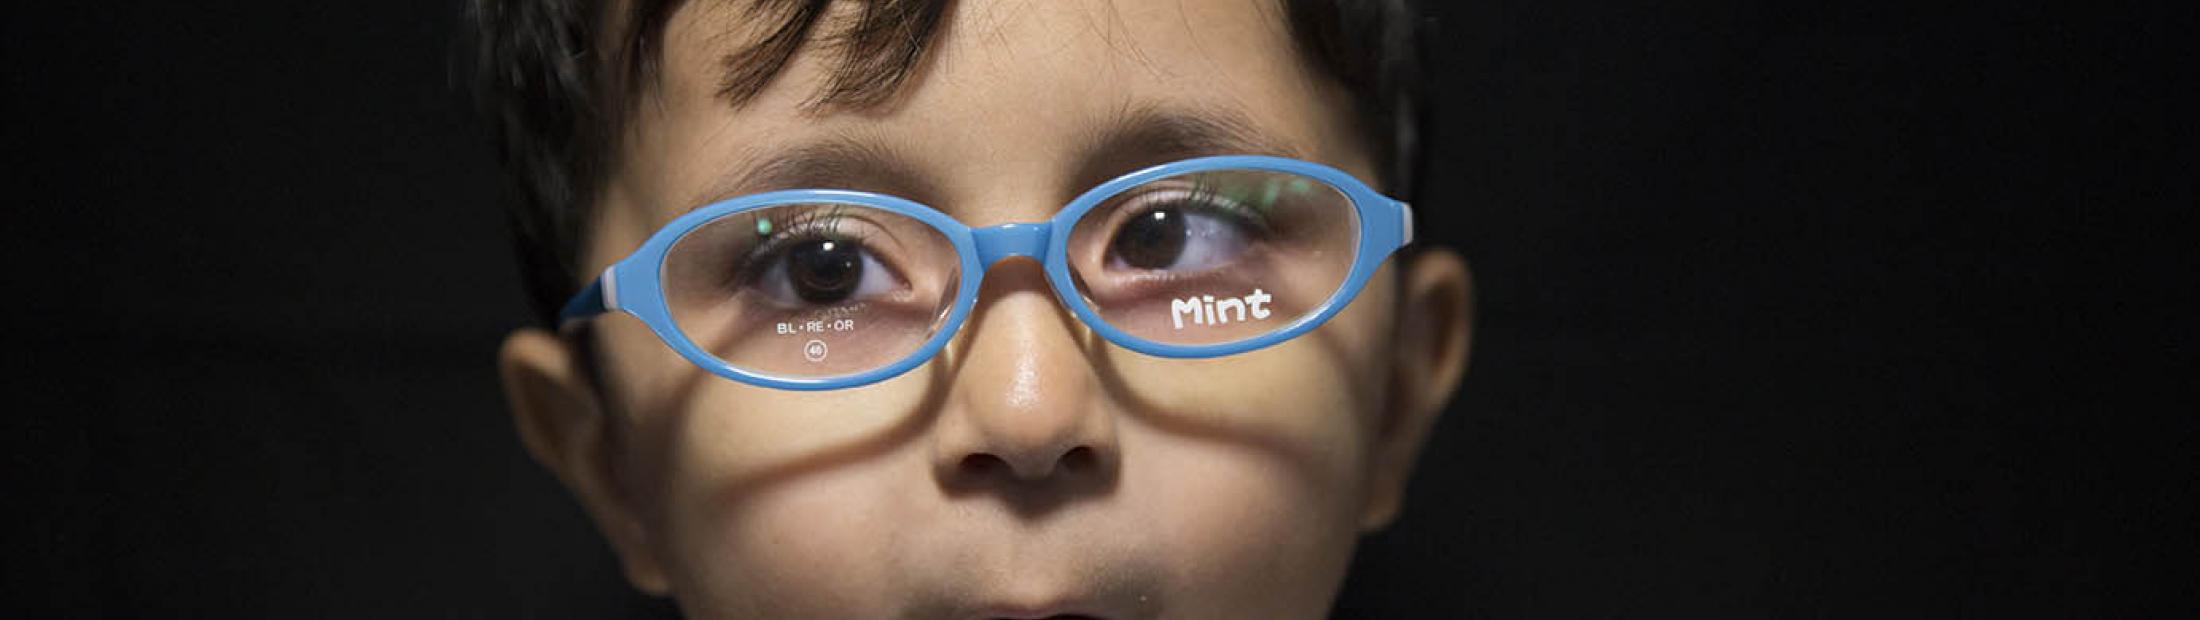 Unas gafas para cada niño